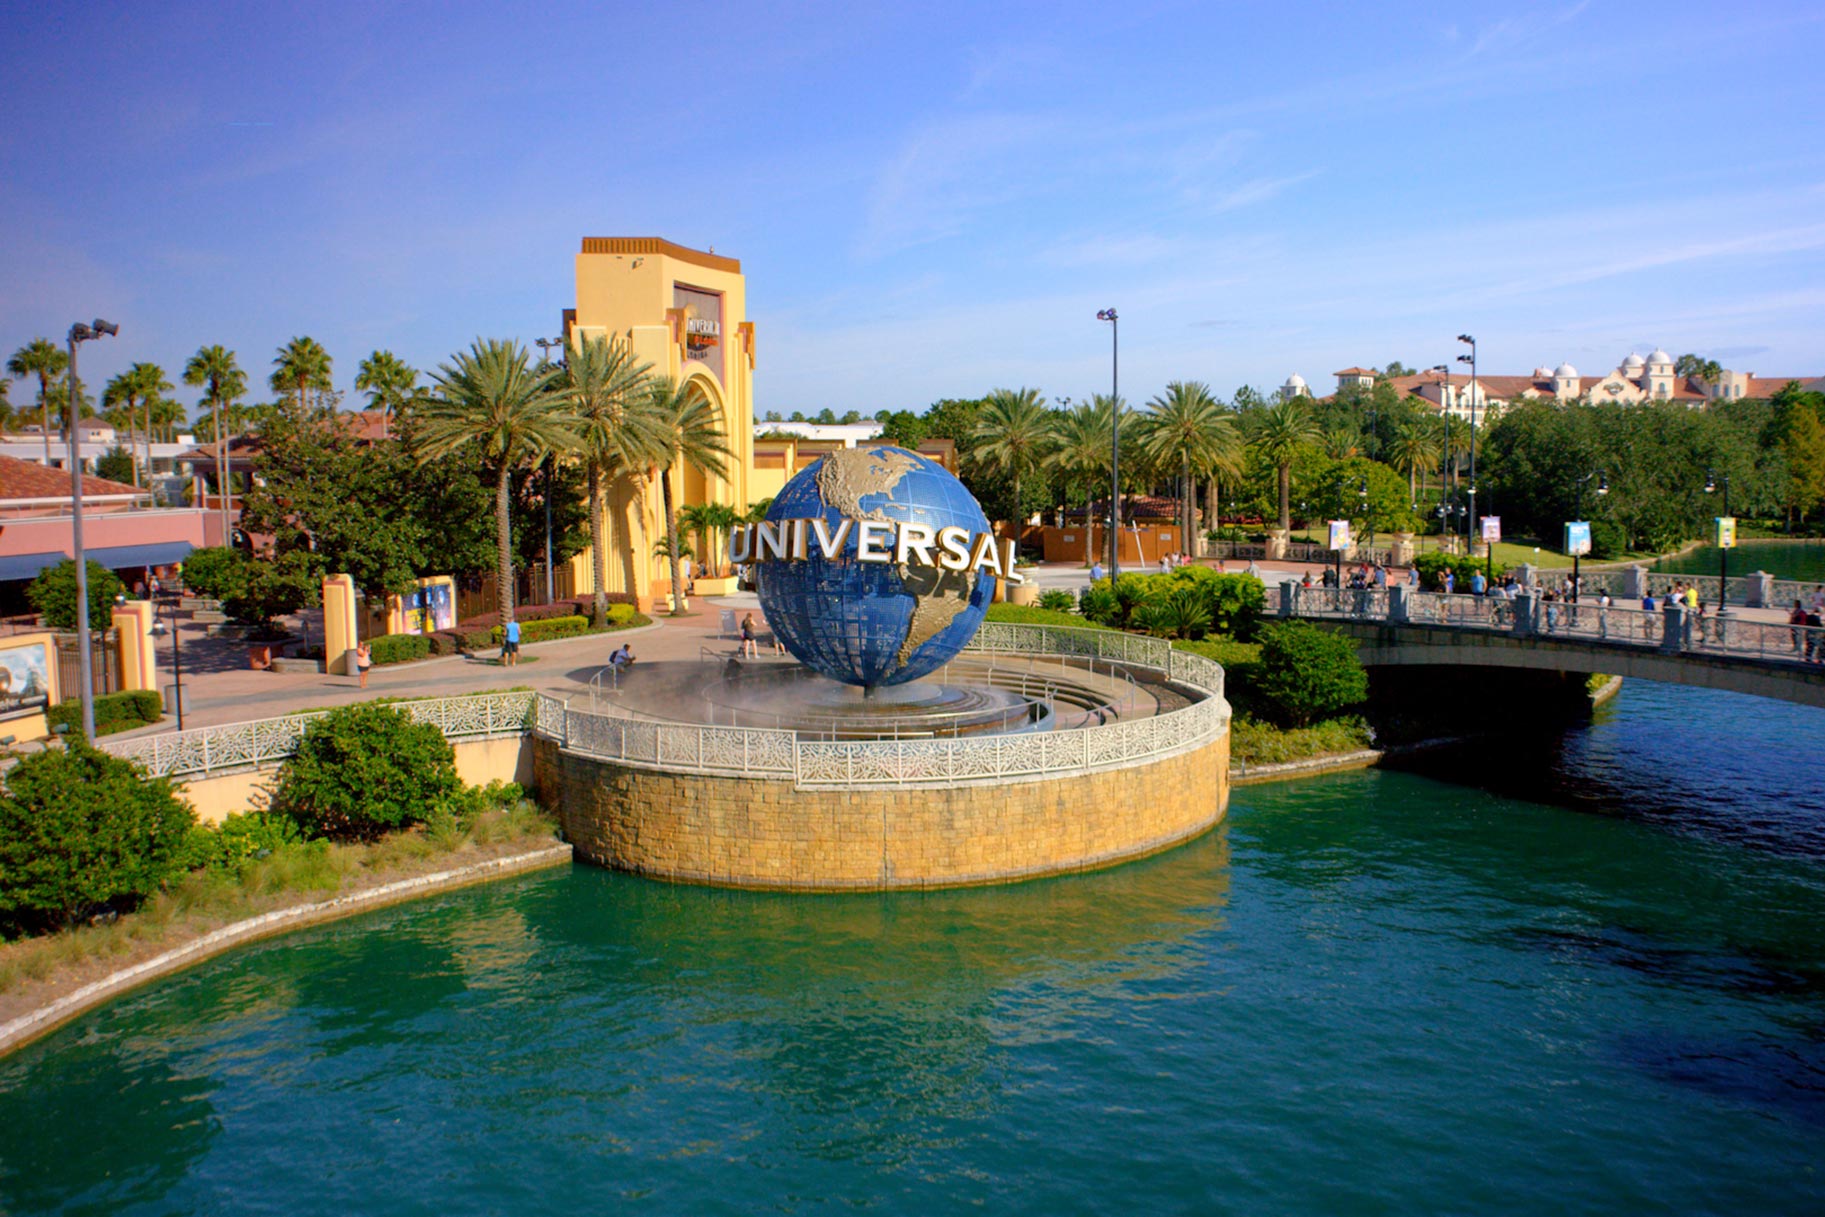 Universal Orlando Globe and bridge over water